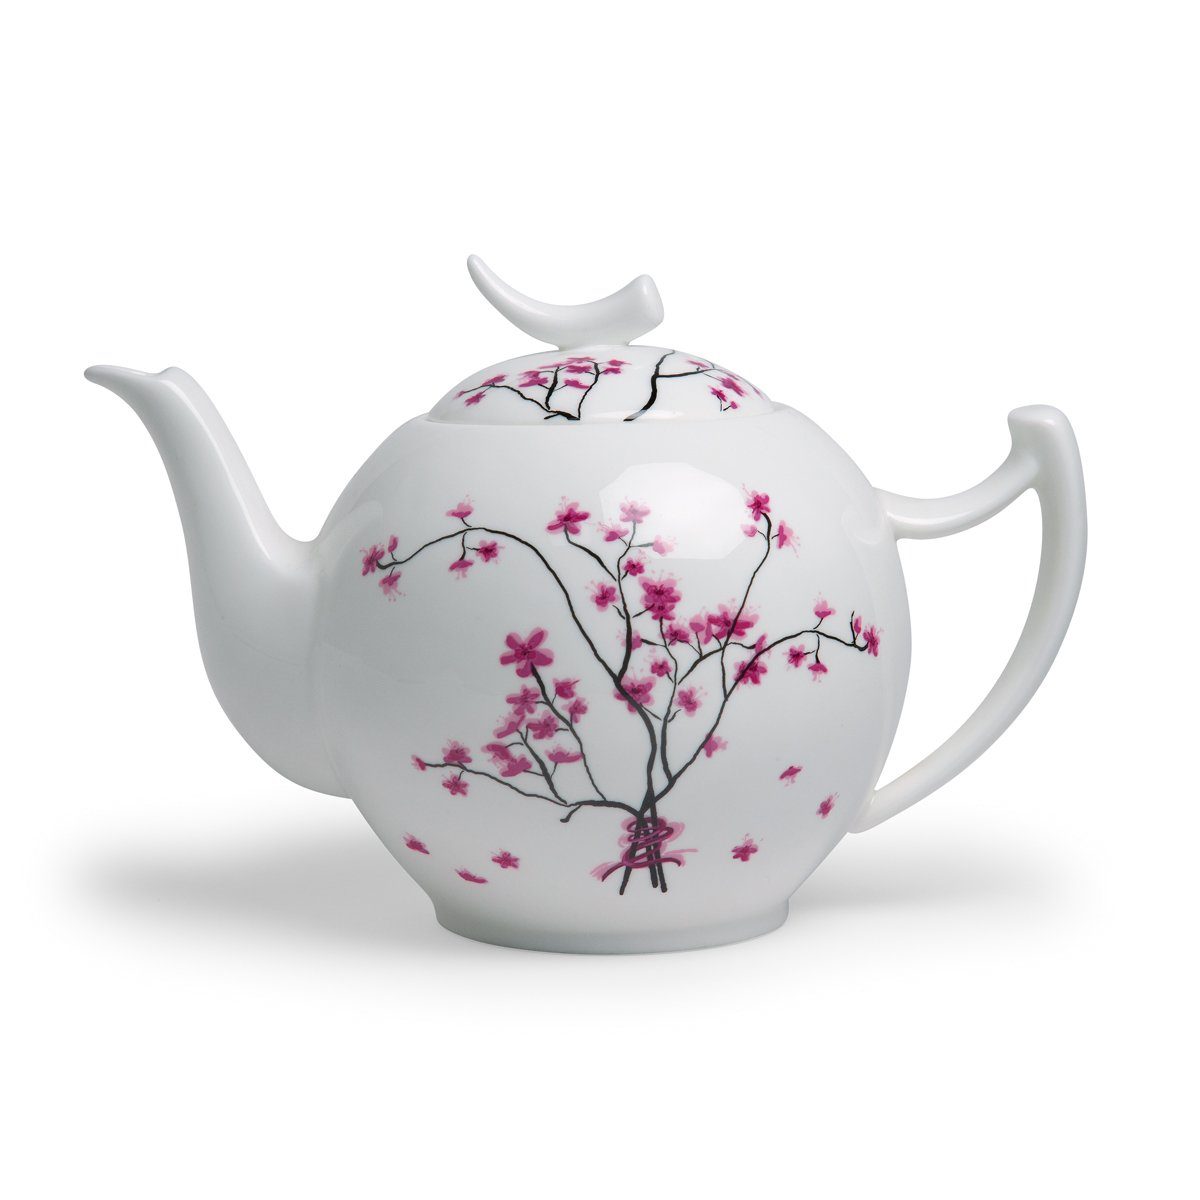 TeaLogic Teekanne TeaLogic Cherry Blossom Teekanne 2 L, spülmaschinengeeignet 